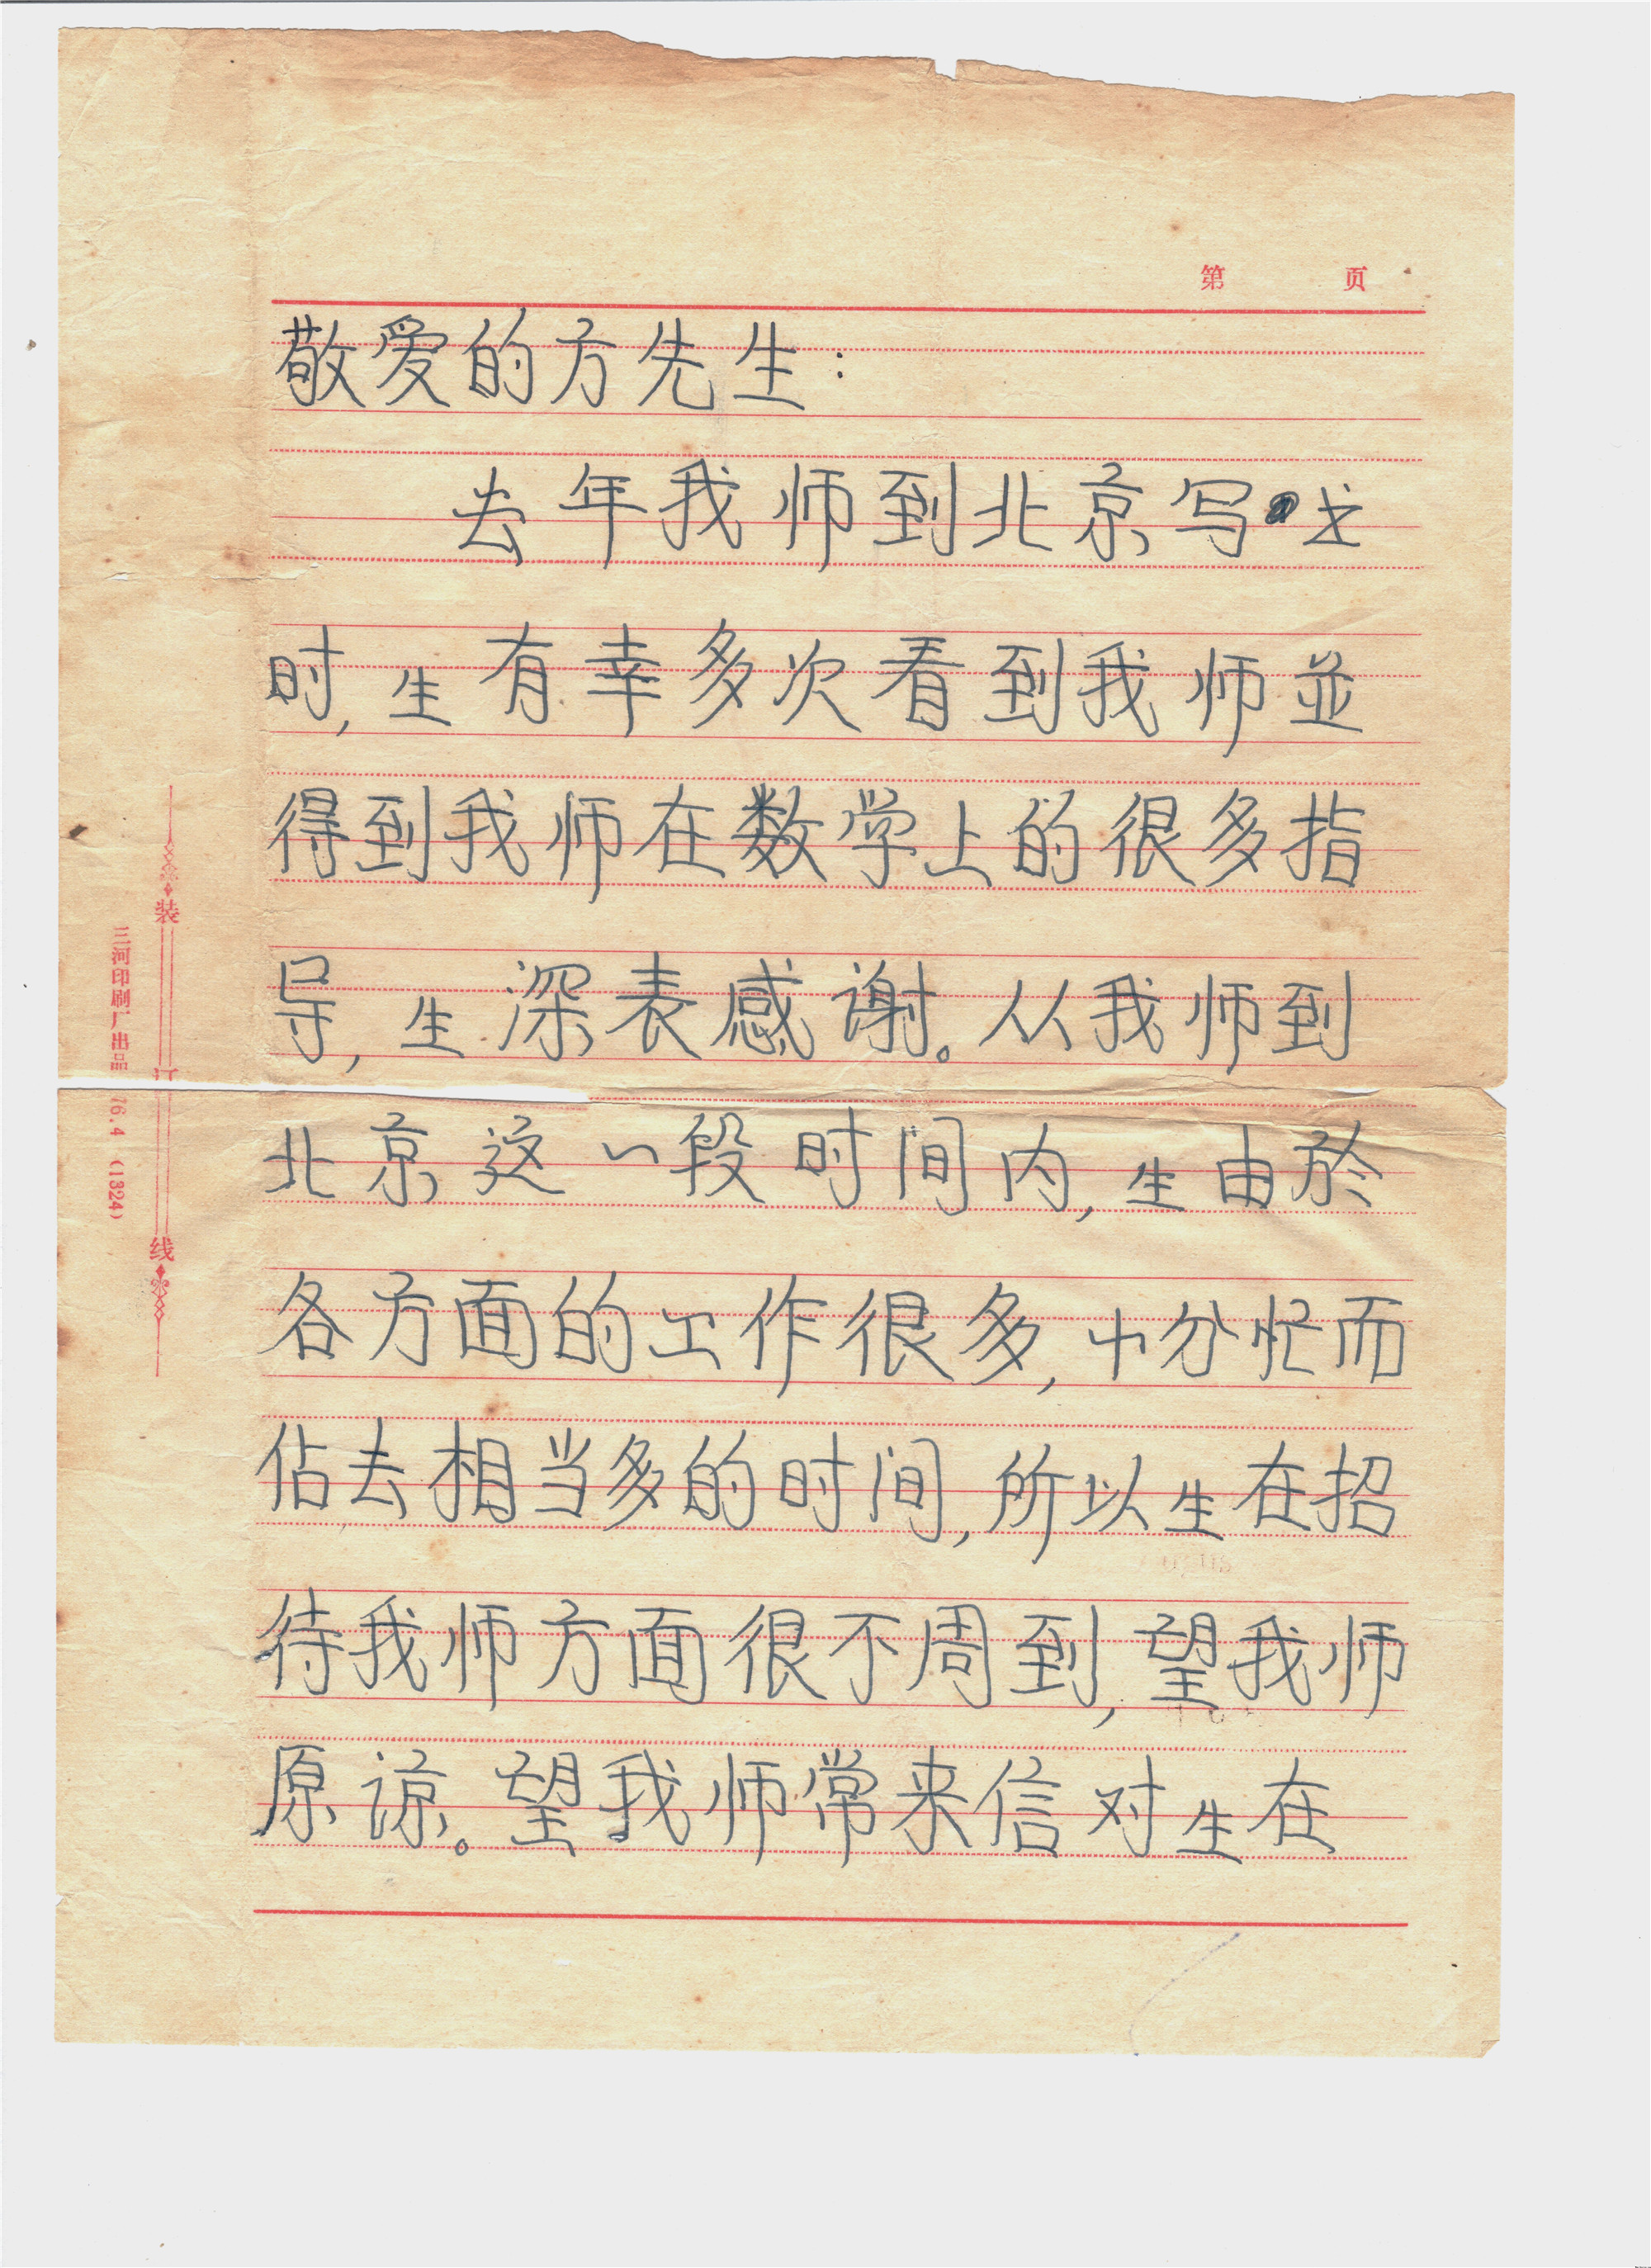 1978年1月10日陈景润写给方德植先生的信